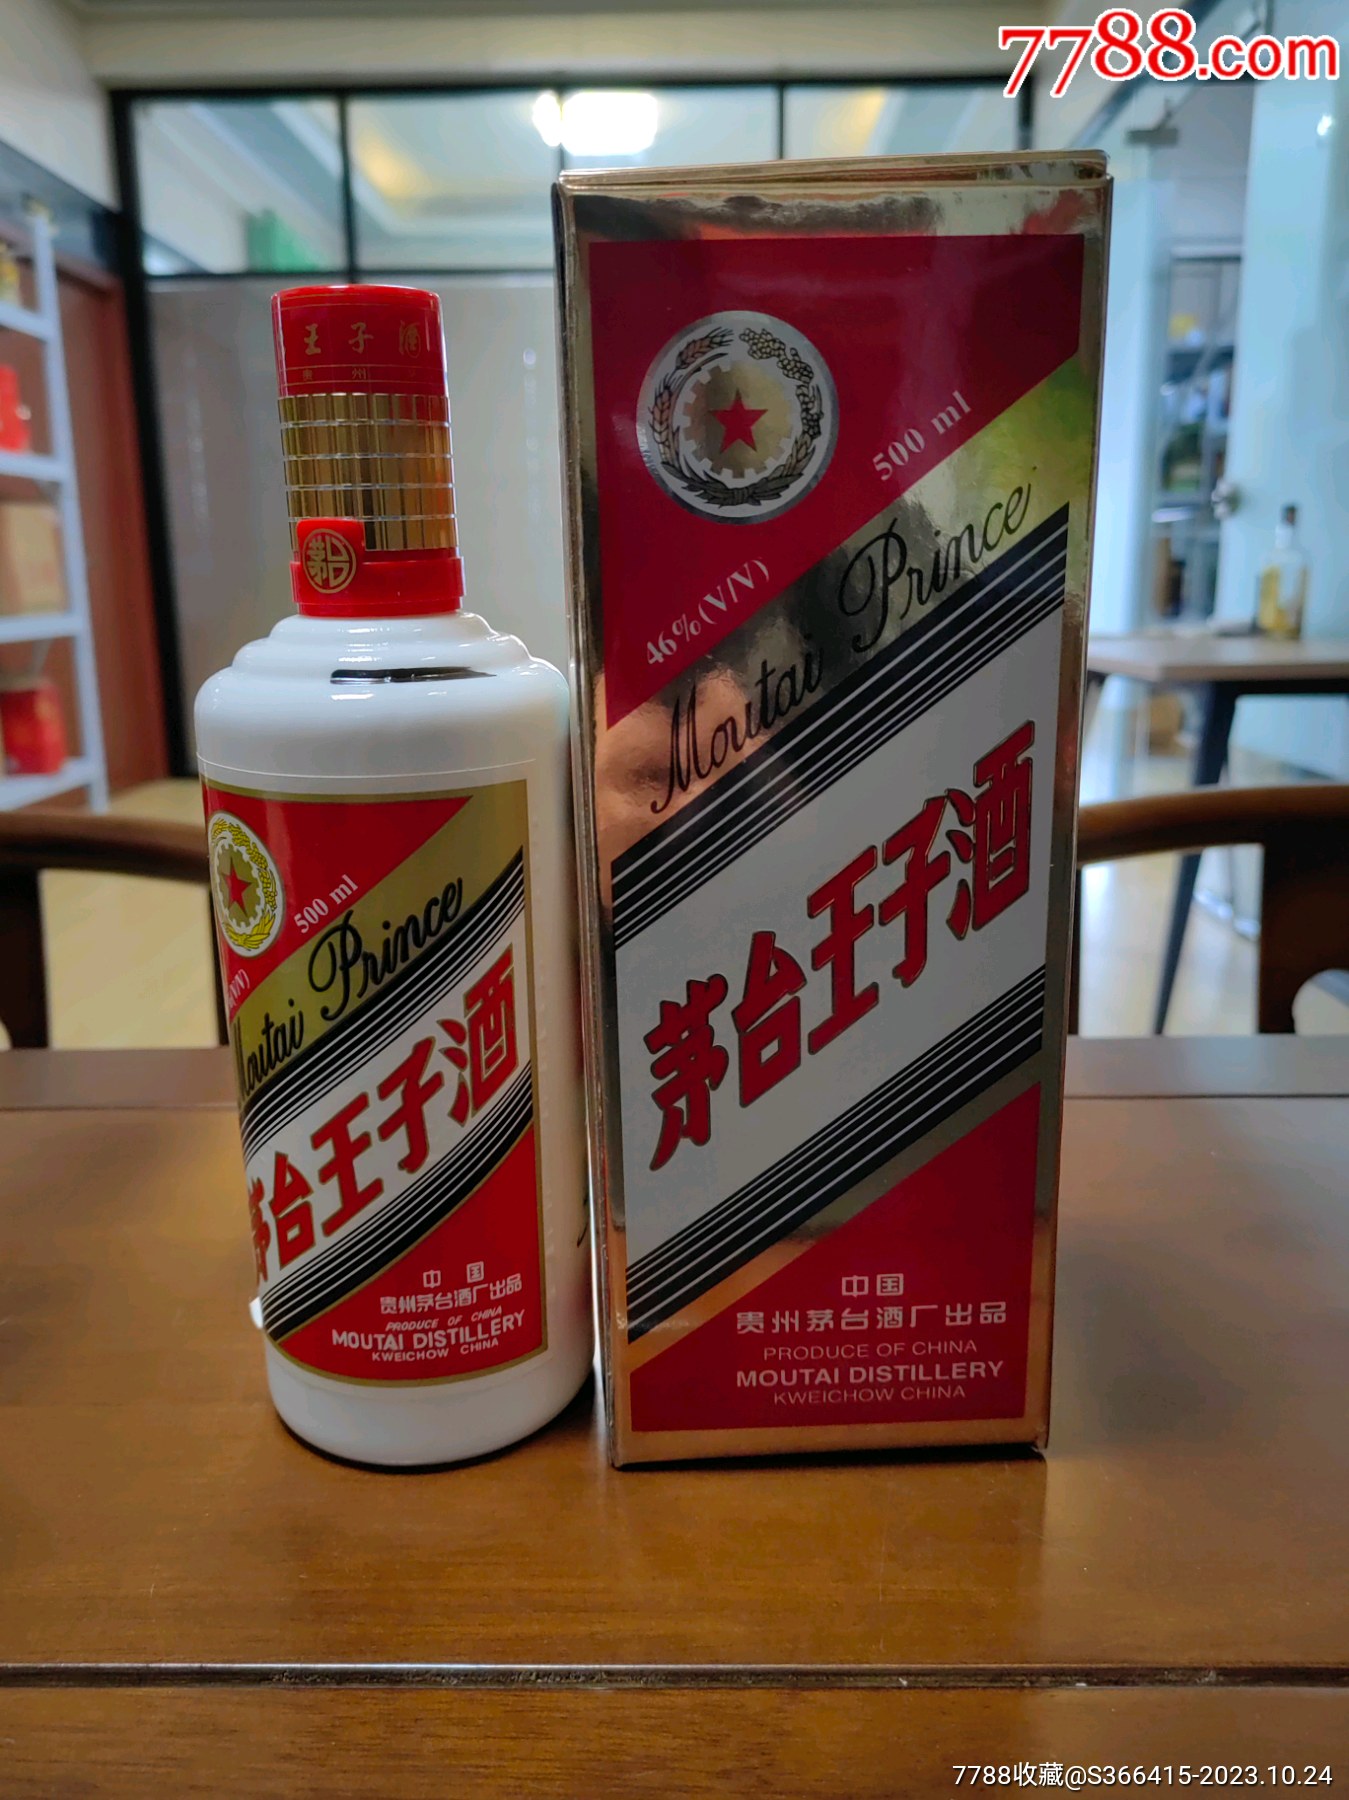 贵州王酒价格表及图片图片